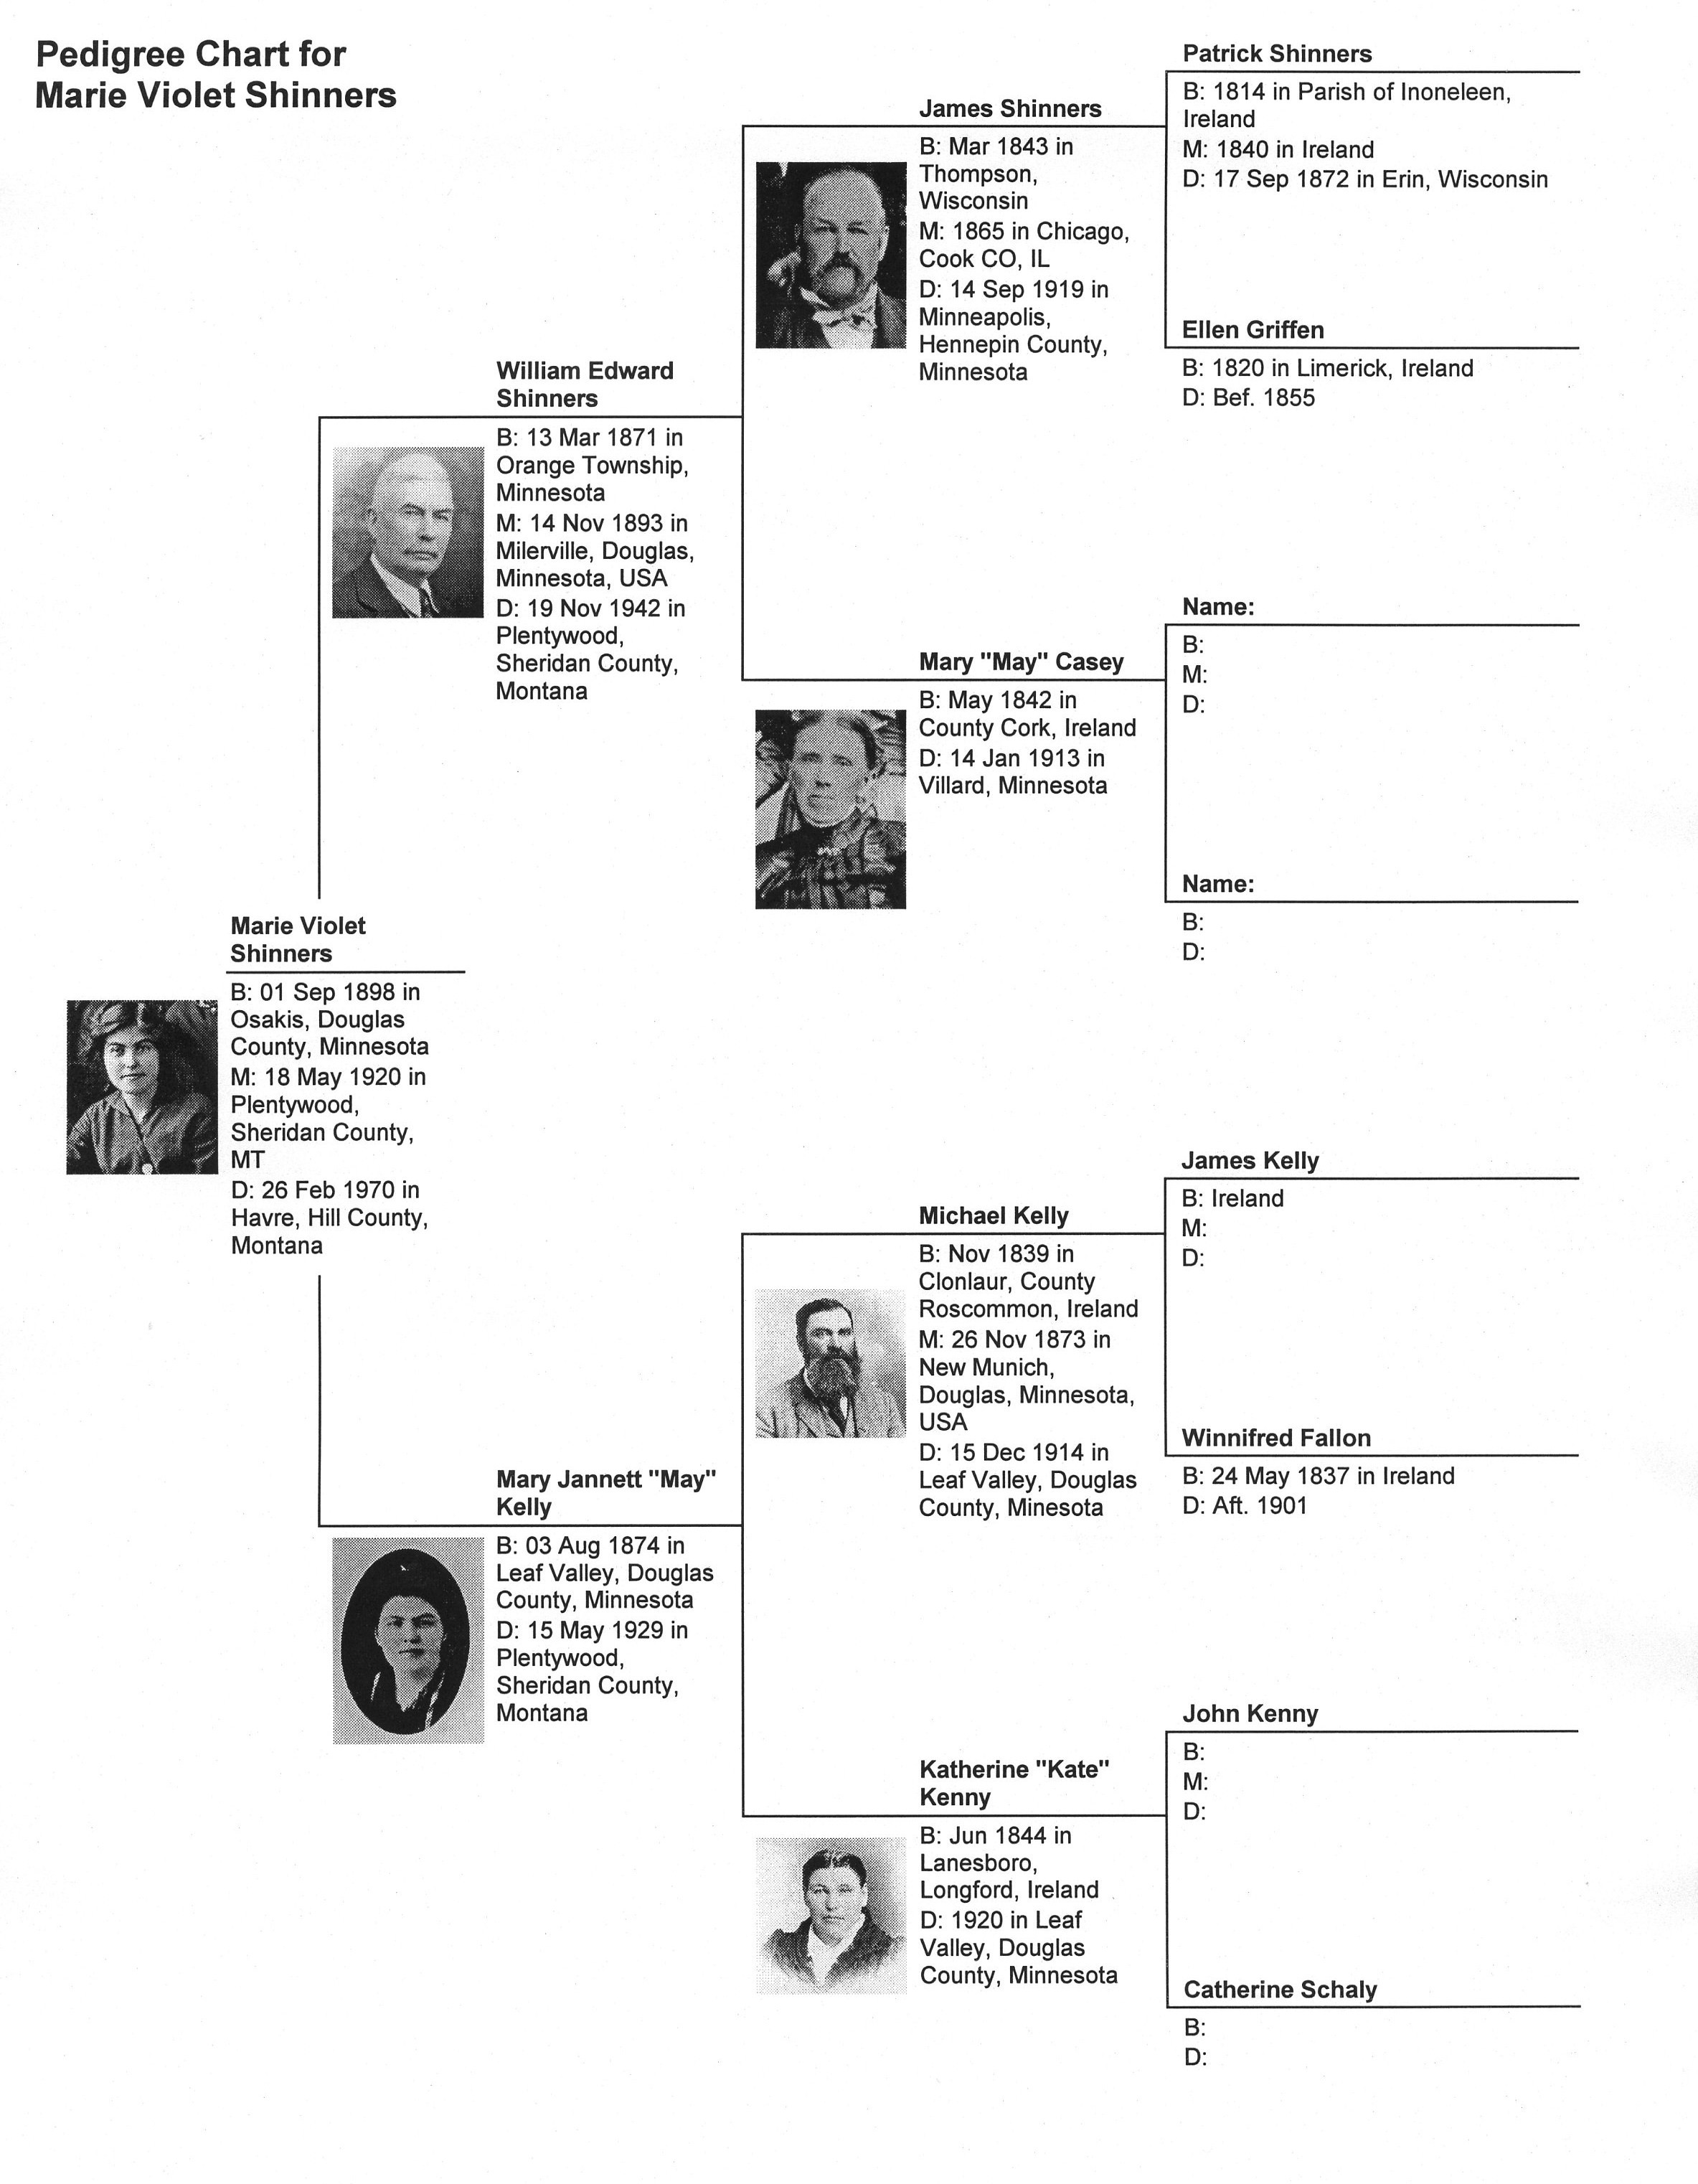 Shinners/Kelly Family Tree